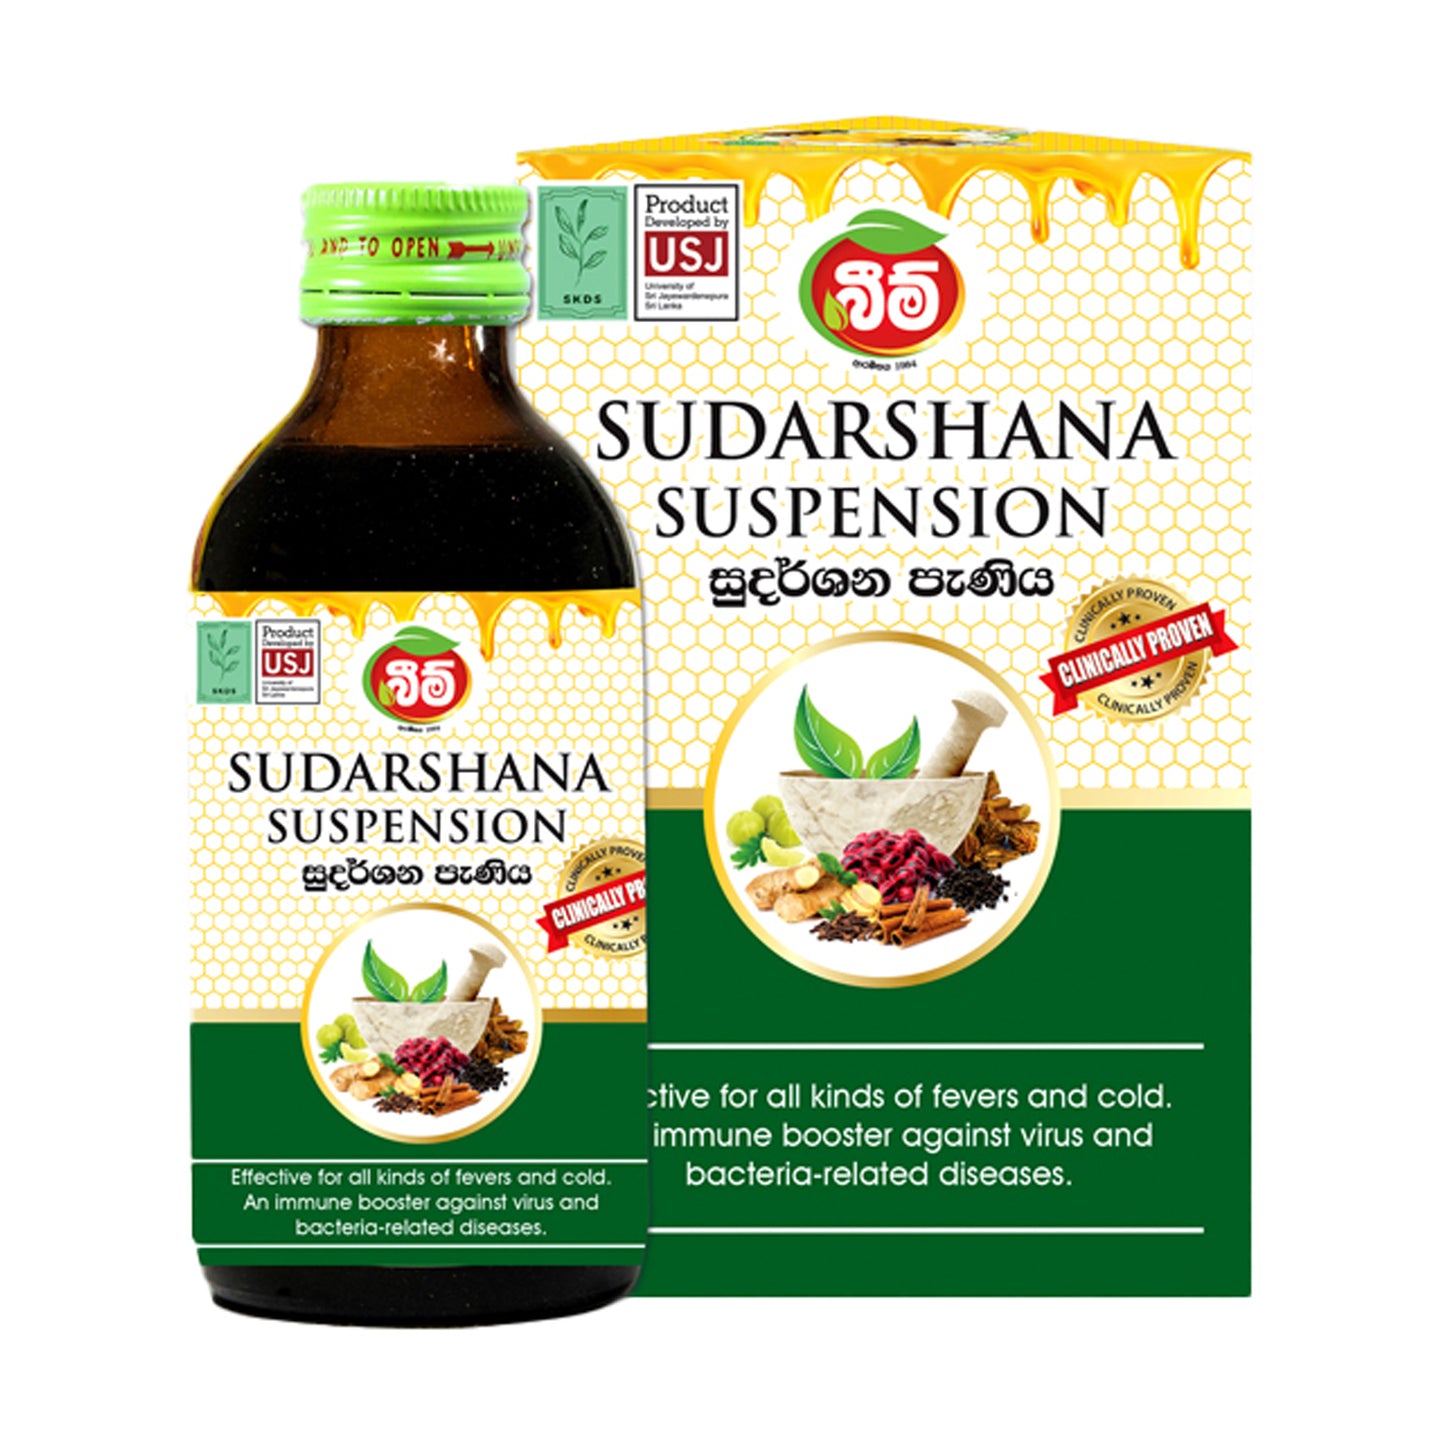 Suspensión Beam Sudarshana (180 ml)